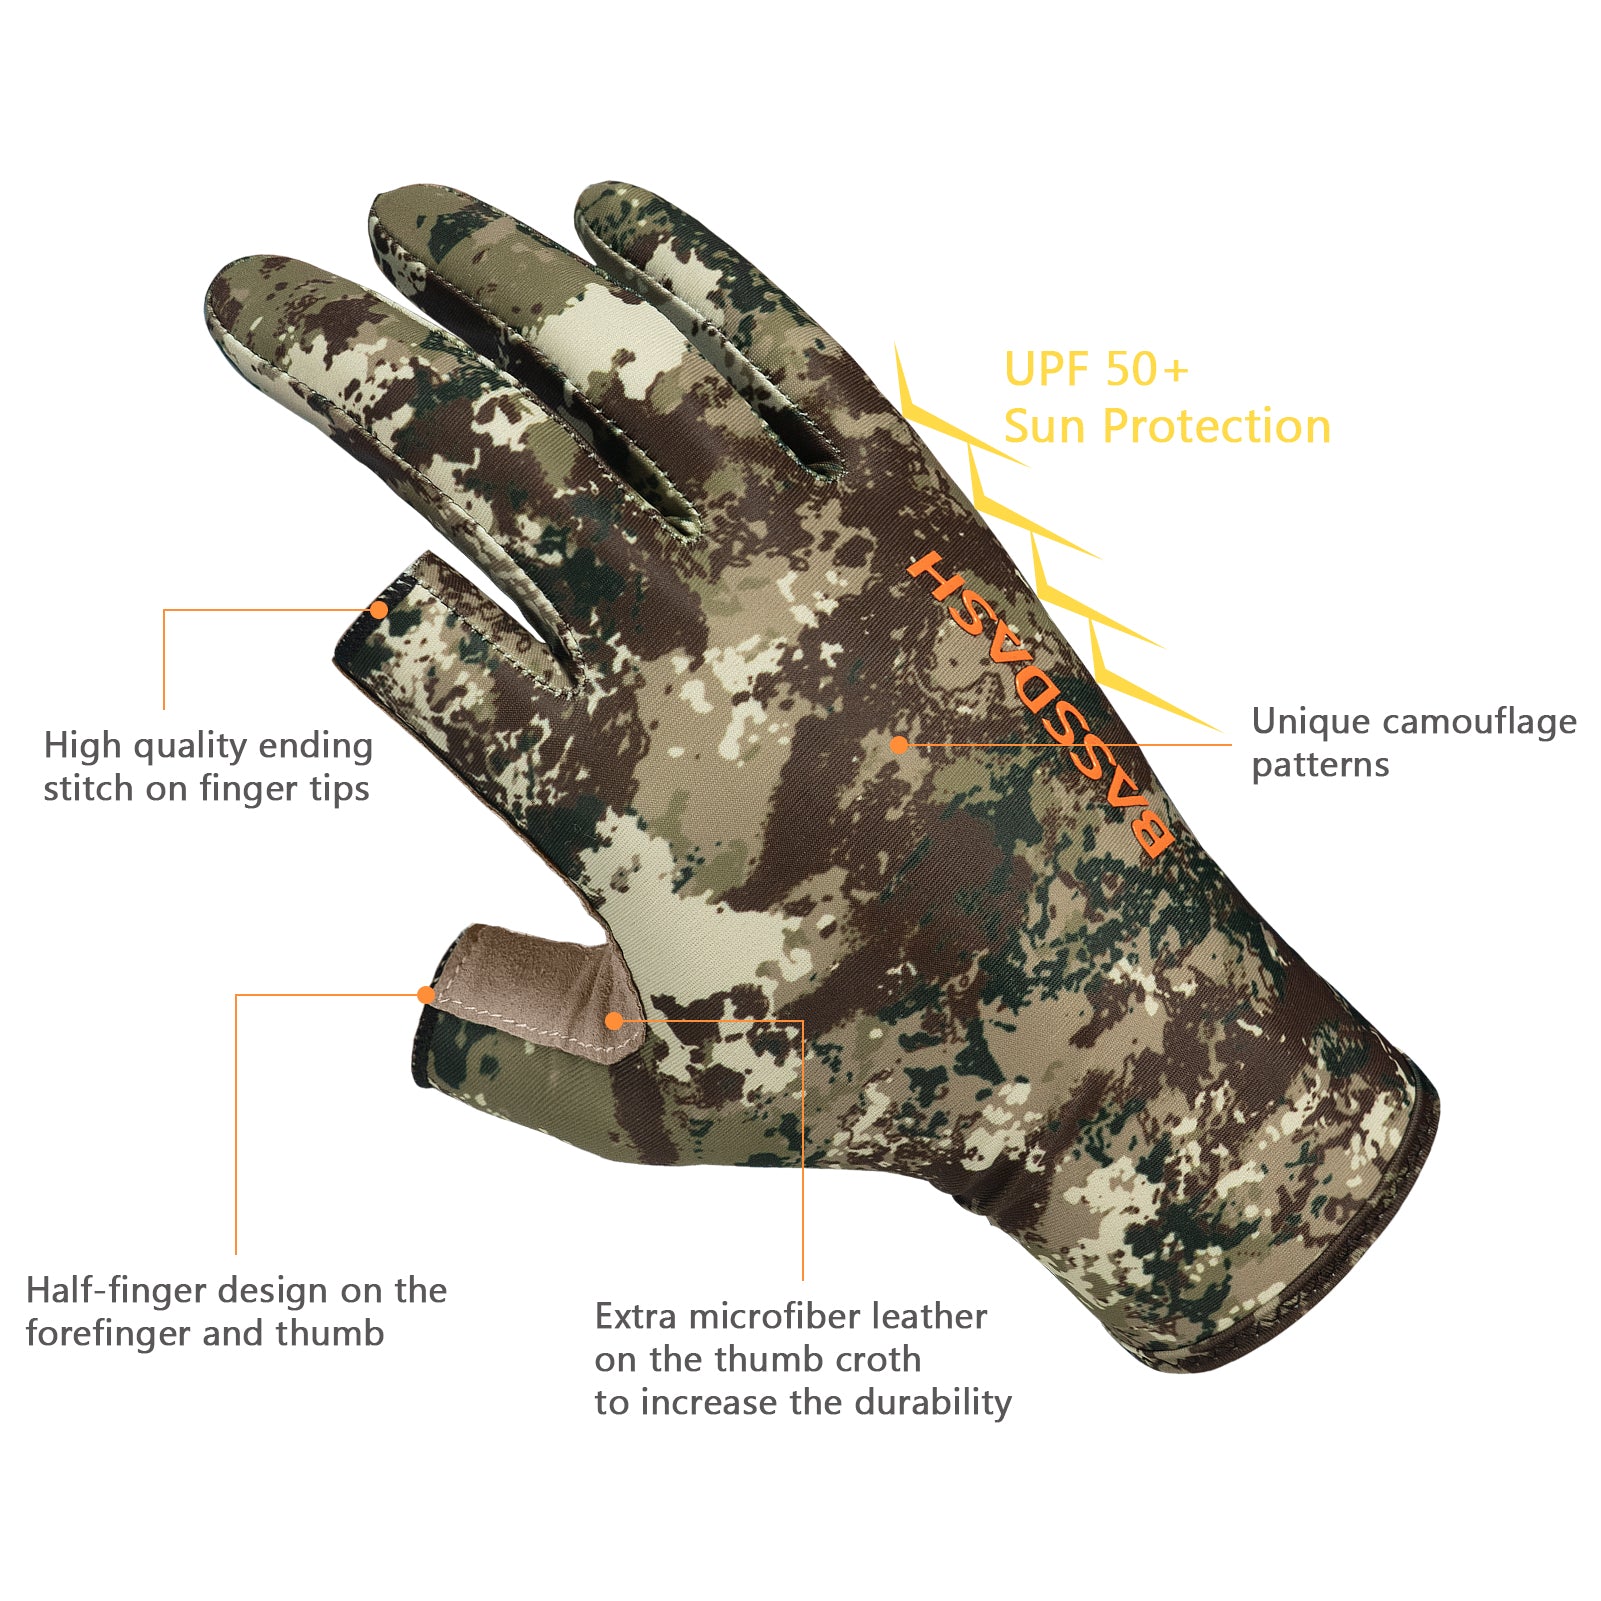 Bassdash ALTIMATE Fishing Gloves Sun Protection Fingerless Hunting UPF 50+  Men's Women's UV Gloves (ALTIMATE I - Grunge Camo, X-Large), Fishing Gloves  -  Canada